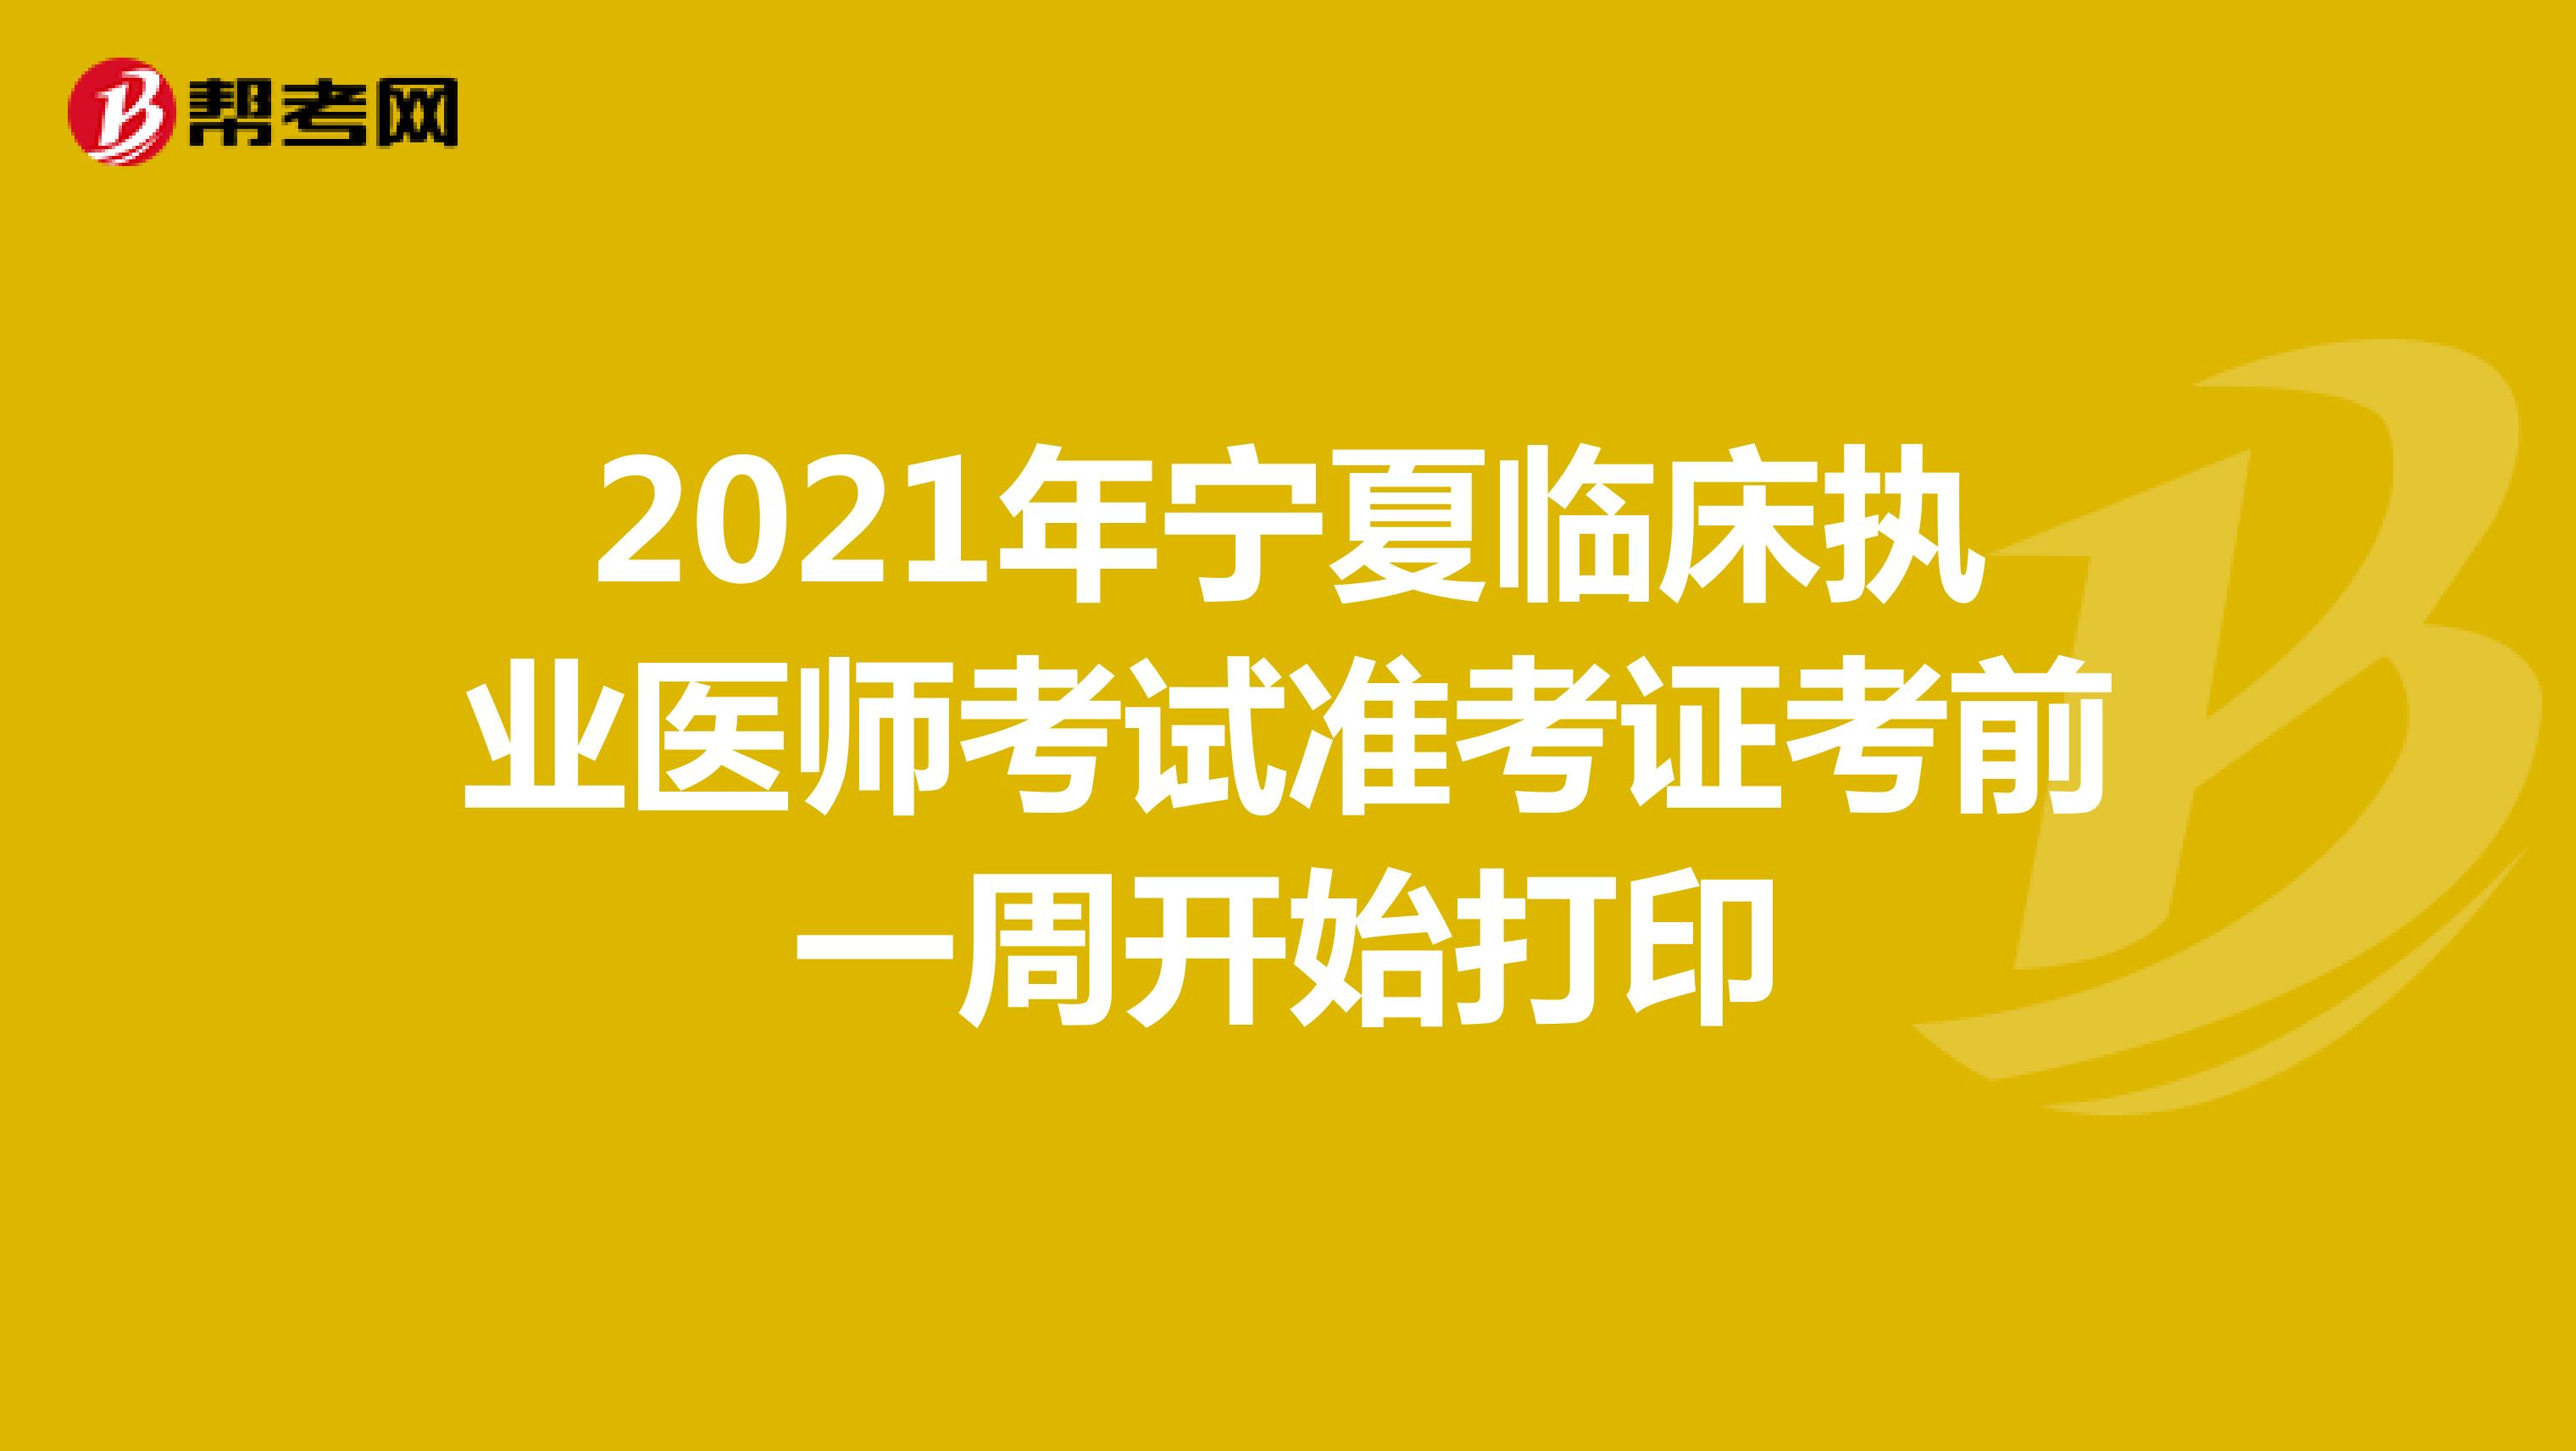 2021年宁夏临床执业医师考试准考证考前一周开始打印